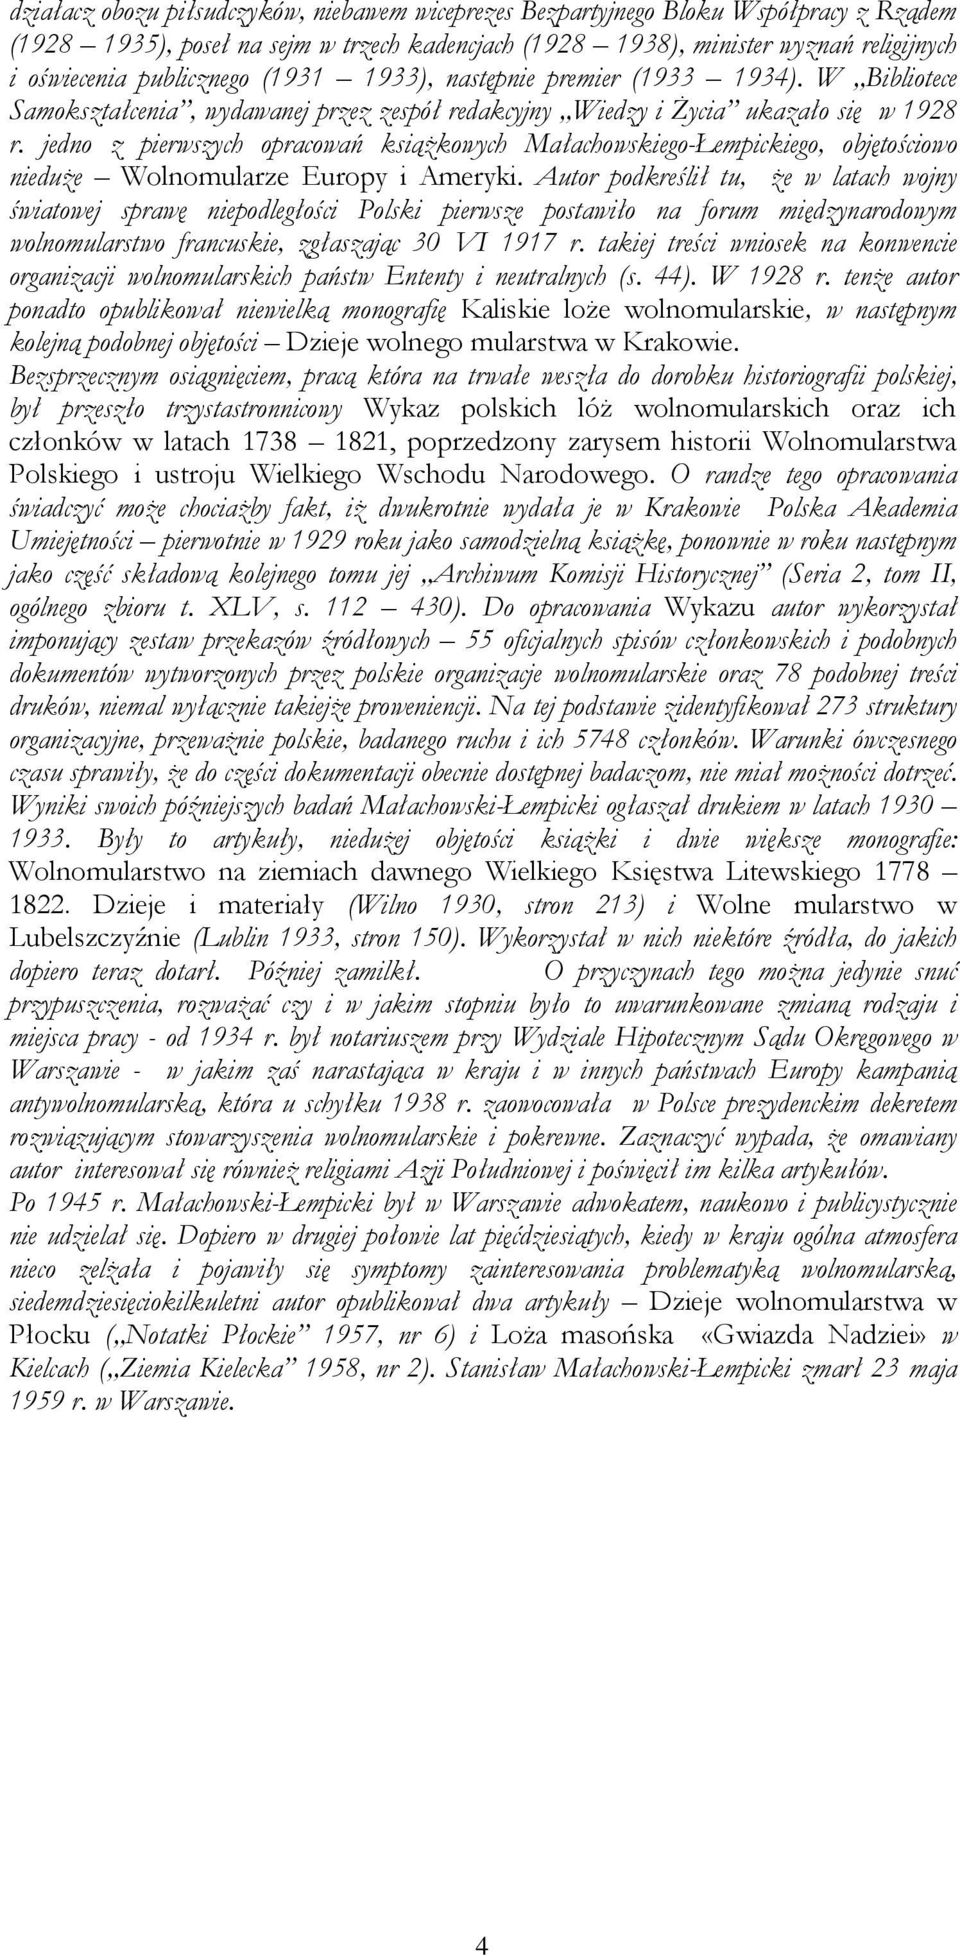 jedno z pierwszych opracowań ksiąŝkowych Małachowskiego-Łempickiego, objętościowo nieduŝe Wolnomularze Europy i Ameryki.